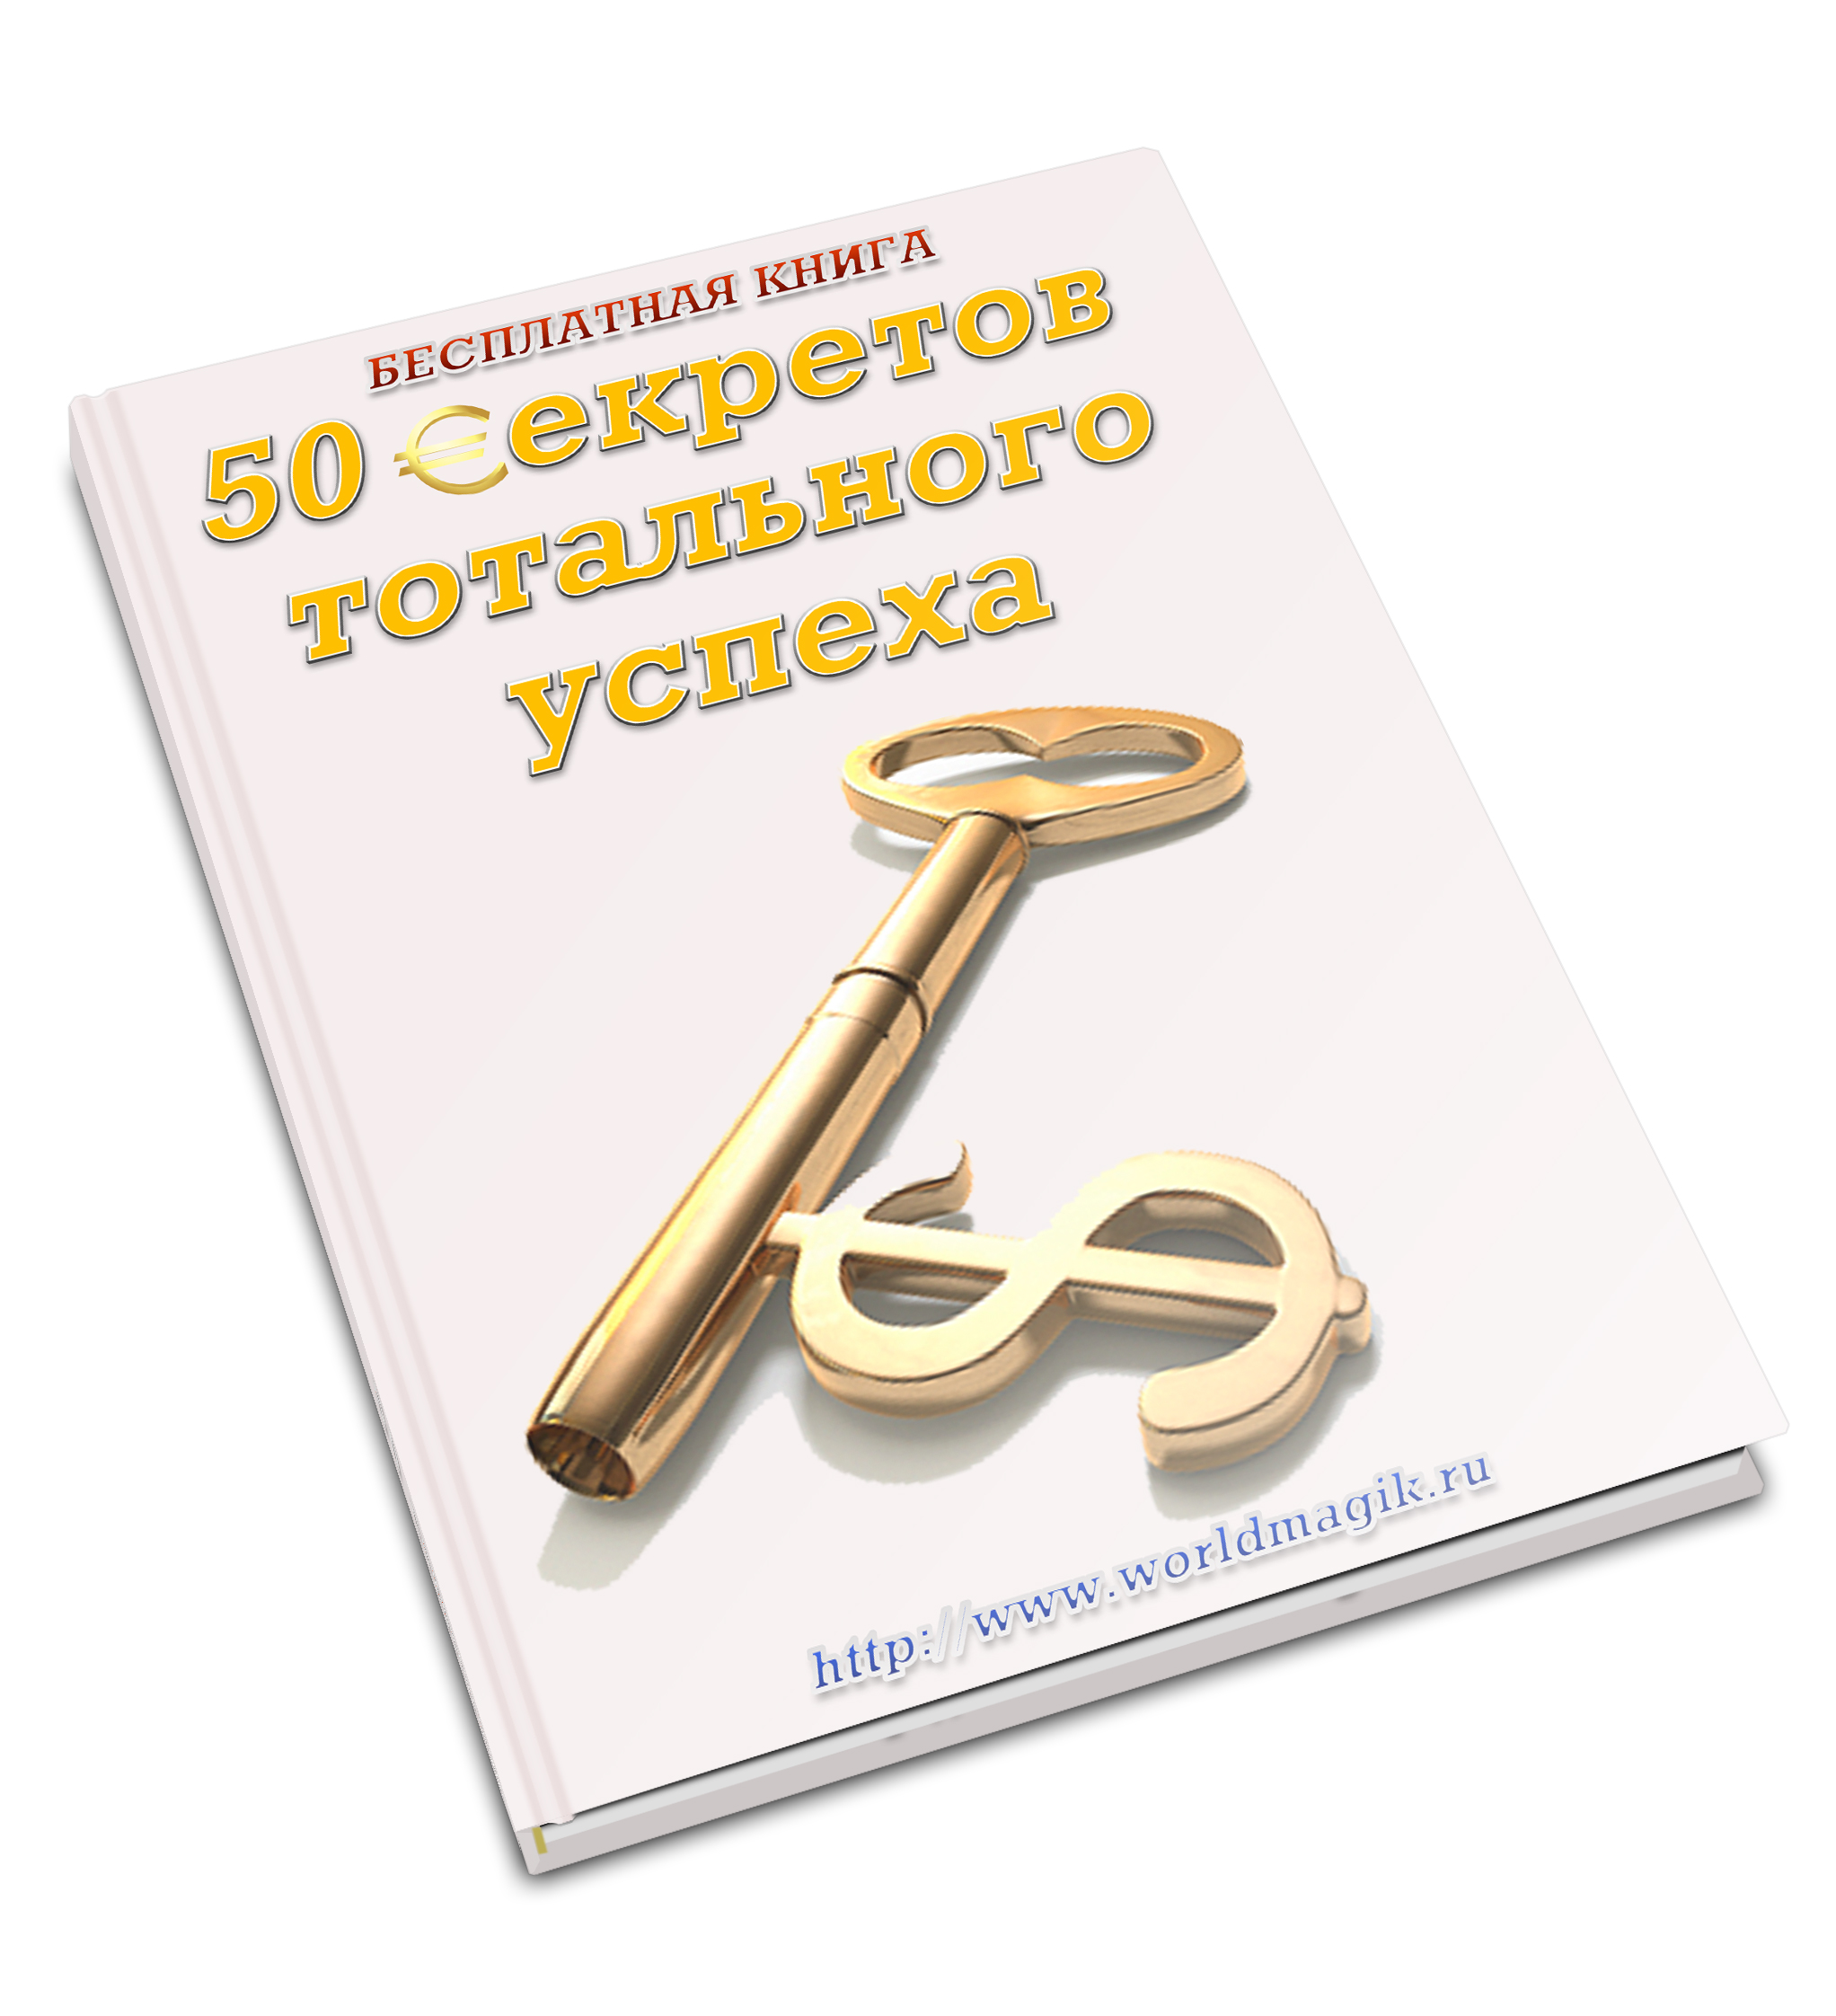 50 секретов тотального успеха